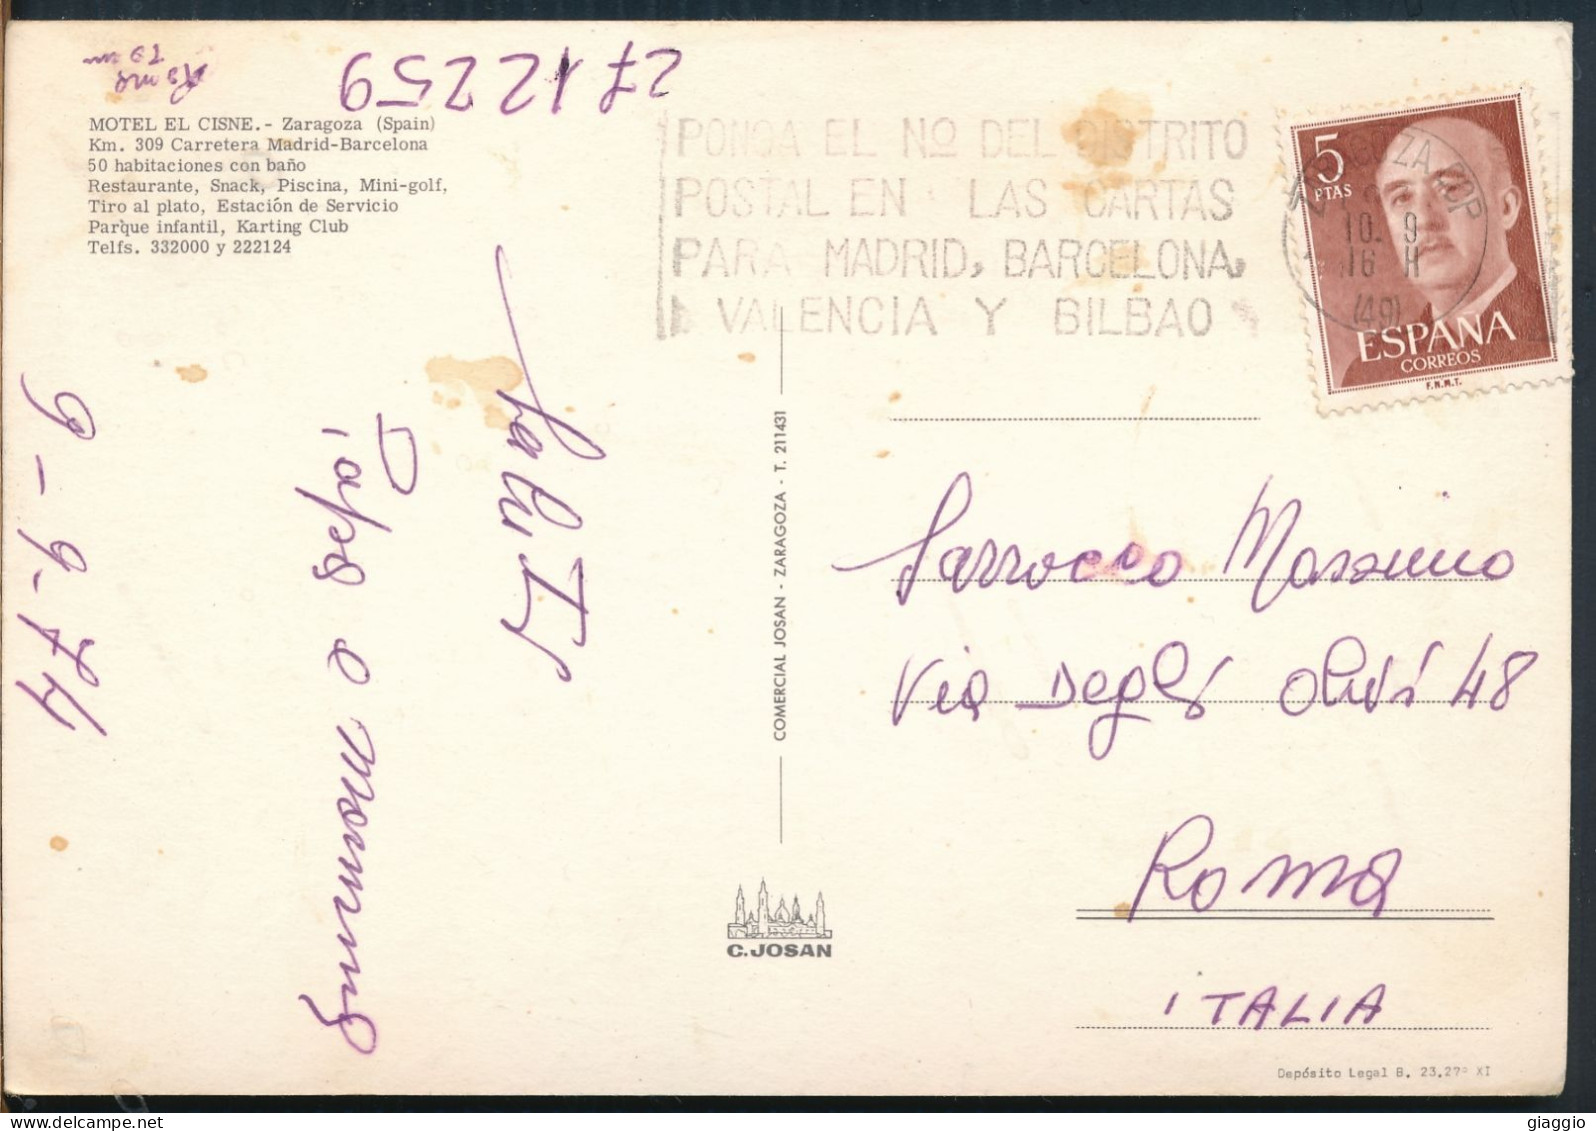 °°° 31035 - SPAIN - ZARAGOZA - MOTEL EL CISNE - 1974 With Stamps °°° - Zaragoza